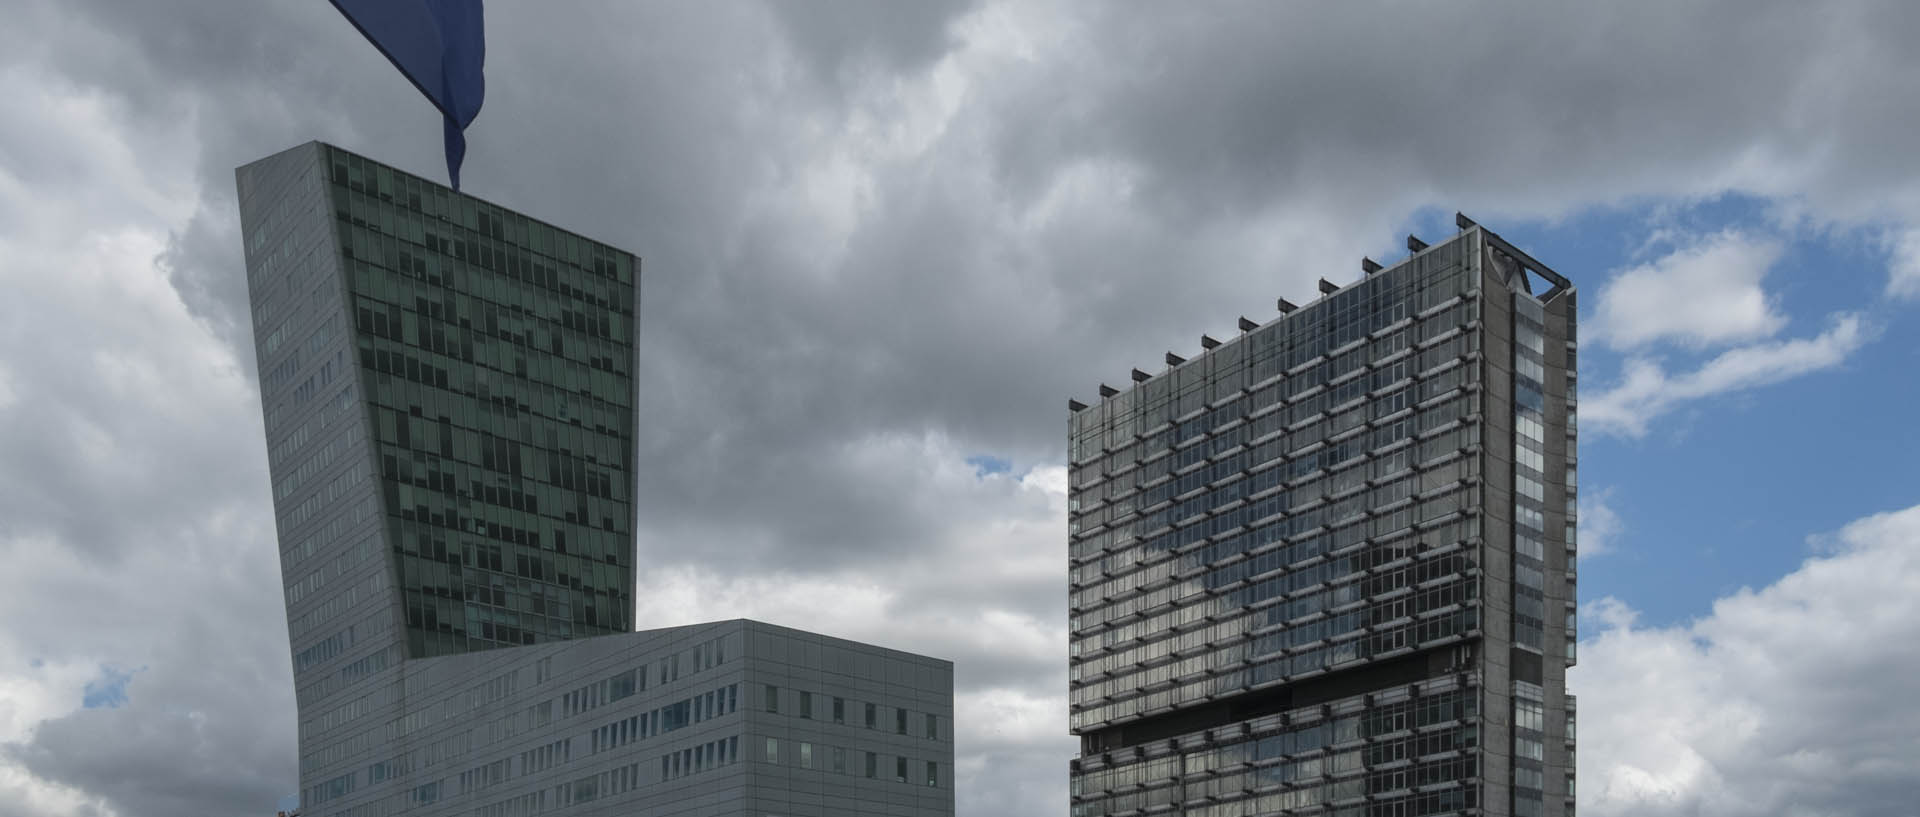 Mercredi 20 mai 2015, 15:26, avenue Le-Corbusier, Lille